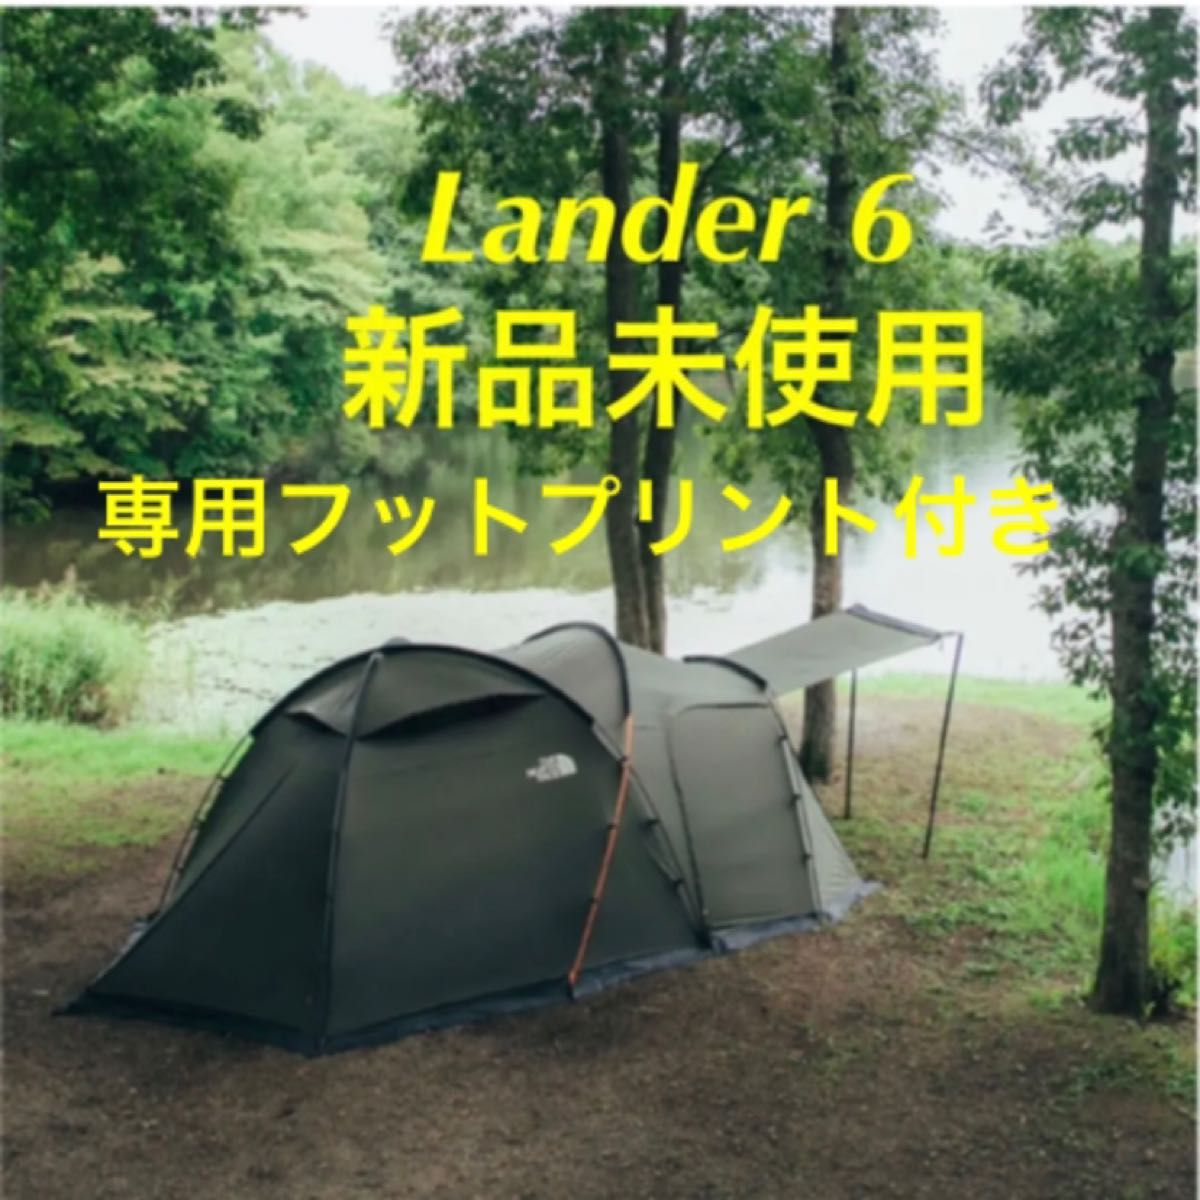 ノースフェイス ランダー6 専用フットプリント Lander6【新品・未開封】-